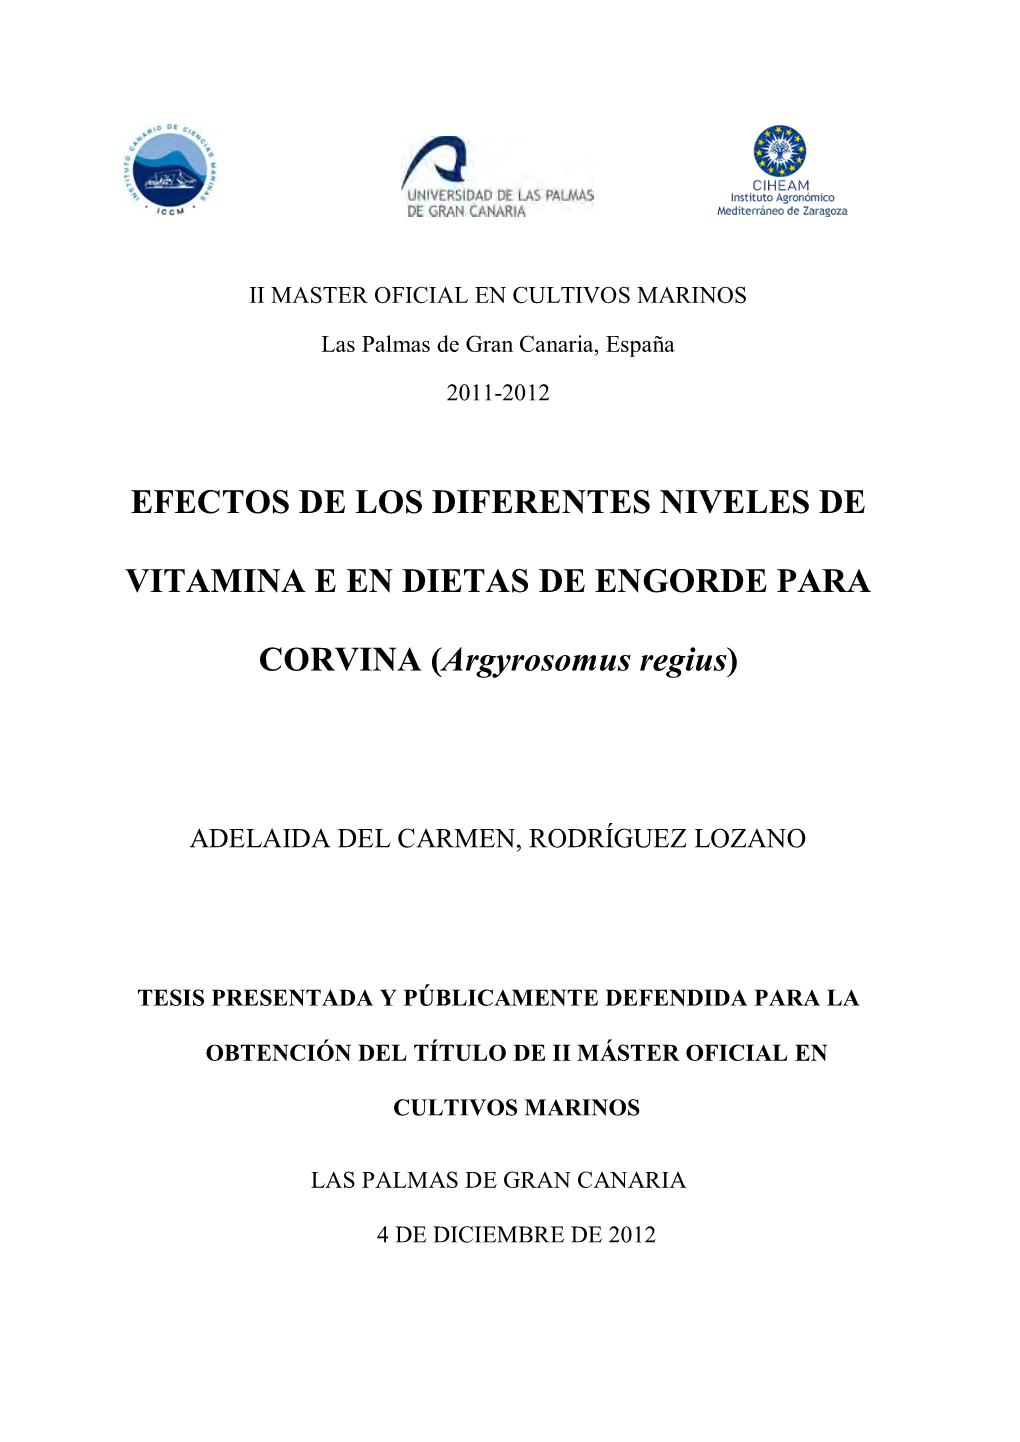 Efectos De Los Diferentes Niveles De Vitamina E En Dietas De Engorde Para Corvina ("Argyrosomus Regius")